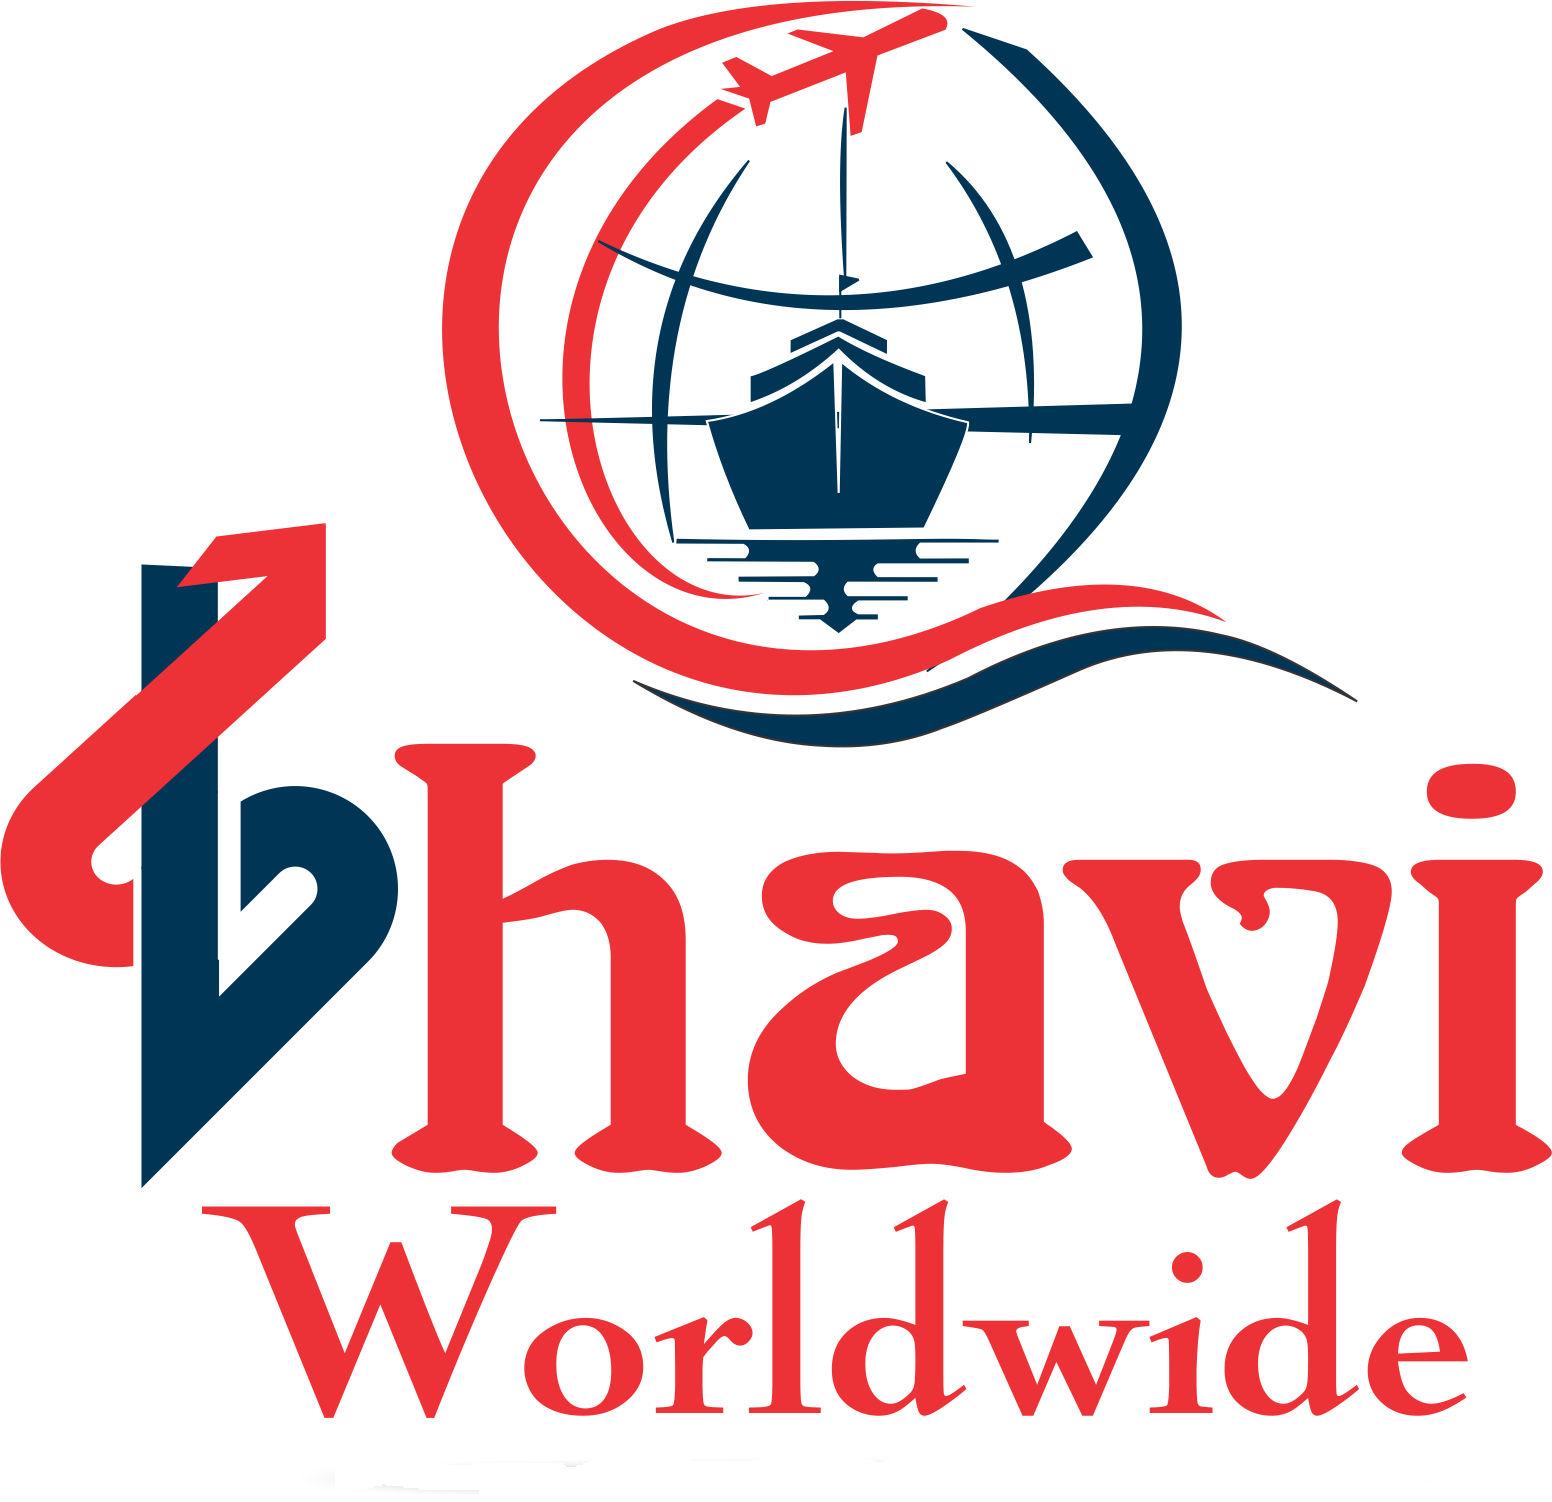 Bhavi Worldwide